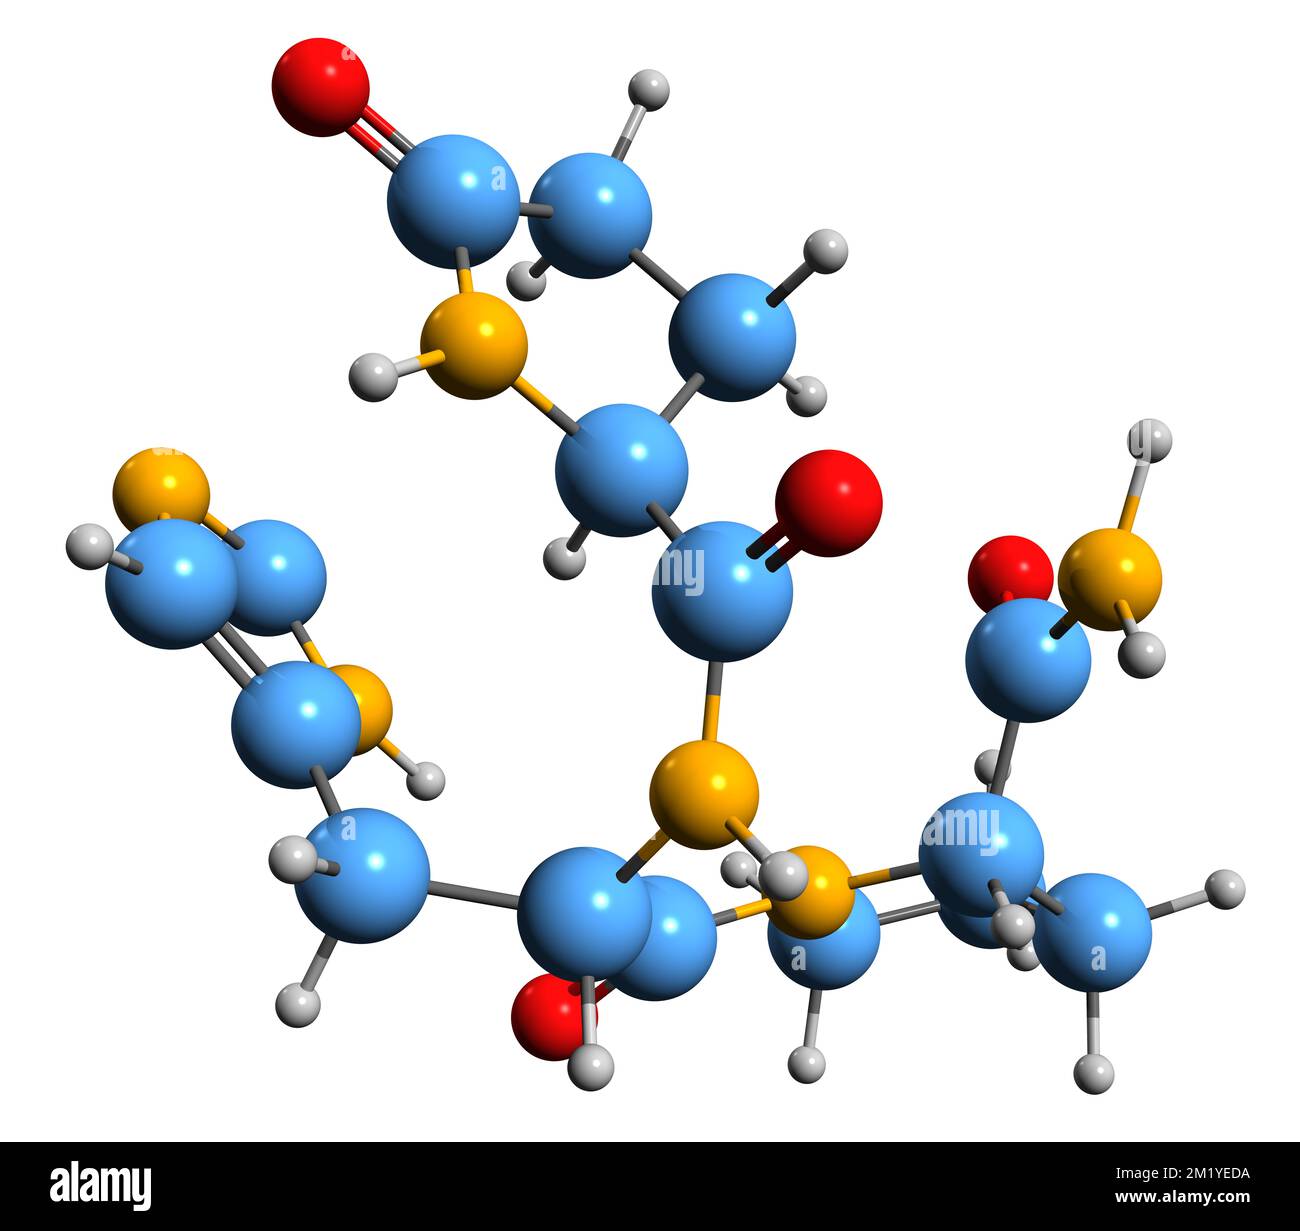 3D immagine dell'ormone tiroideo-stimolante formula scheletrica - struttura chimica molecolare della tirotropina isolata su sfondo bianco Foto Stock